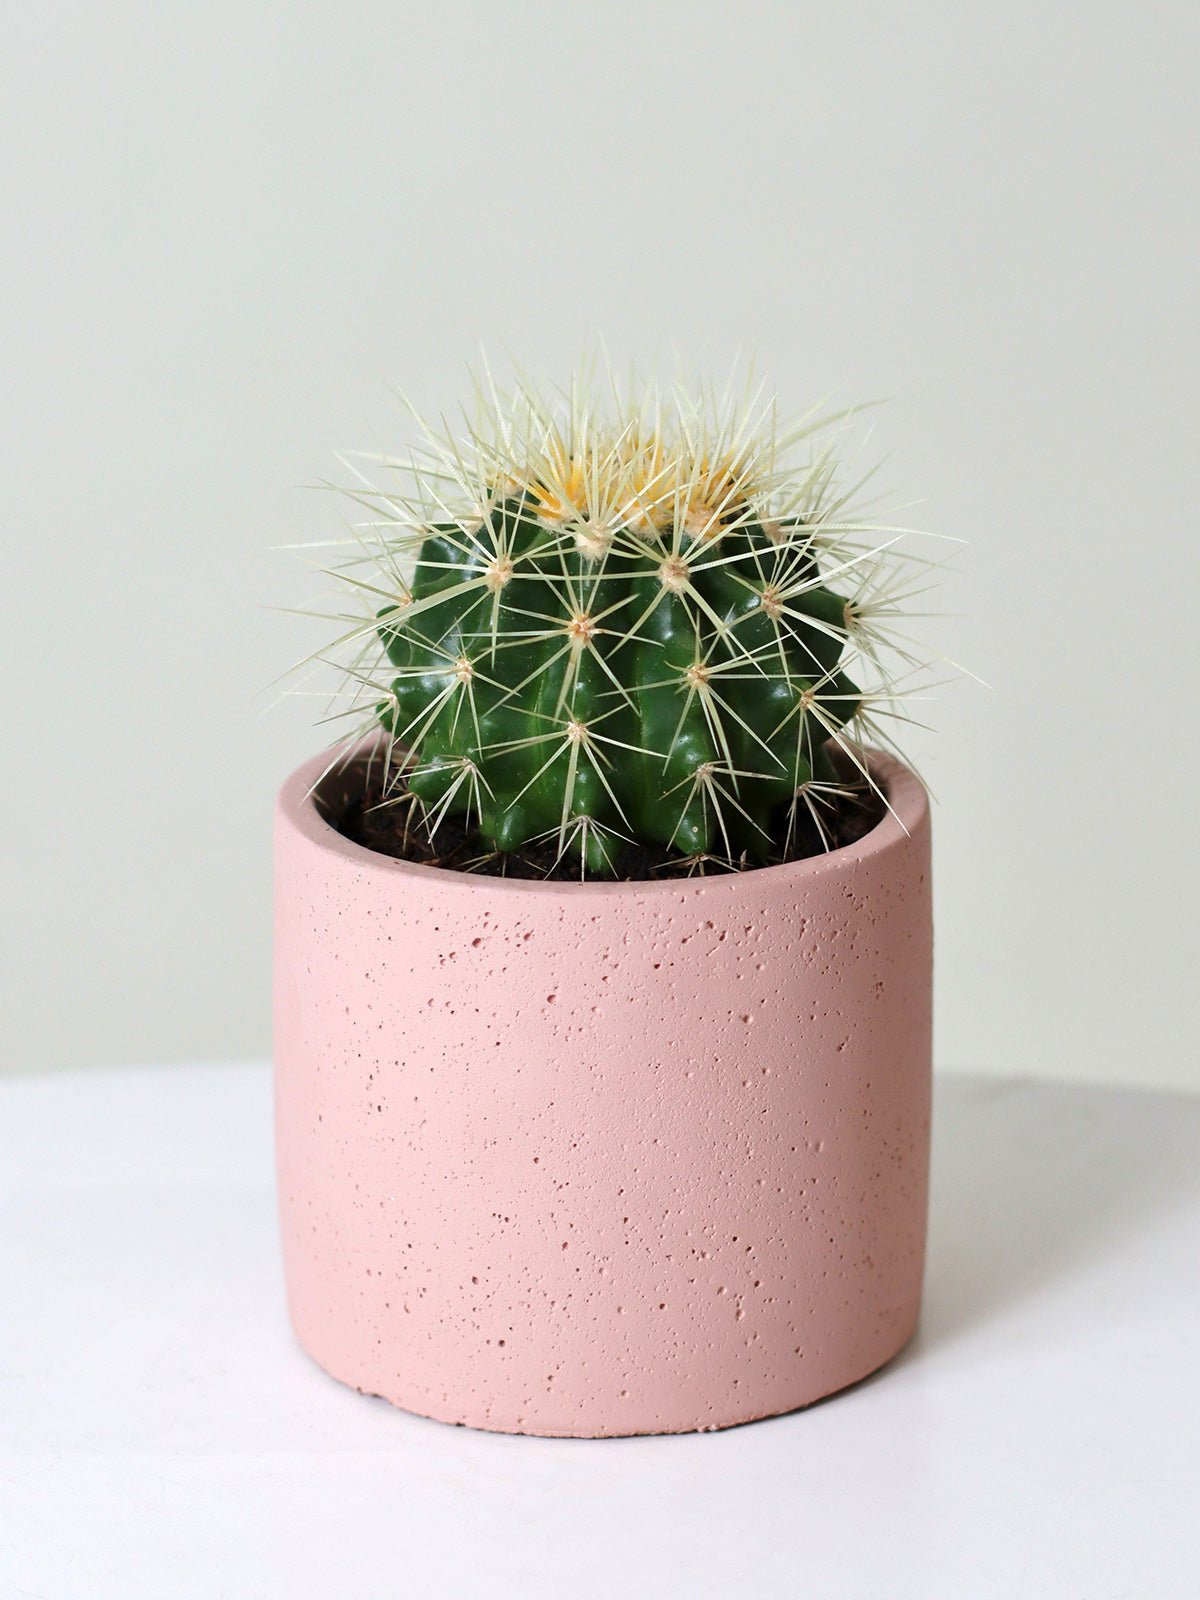 Golden Barrel Cactus + 110mm Pot - Amazing Graze Flowers